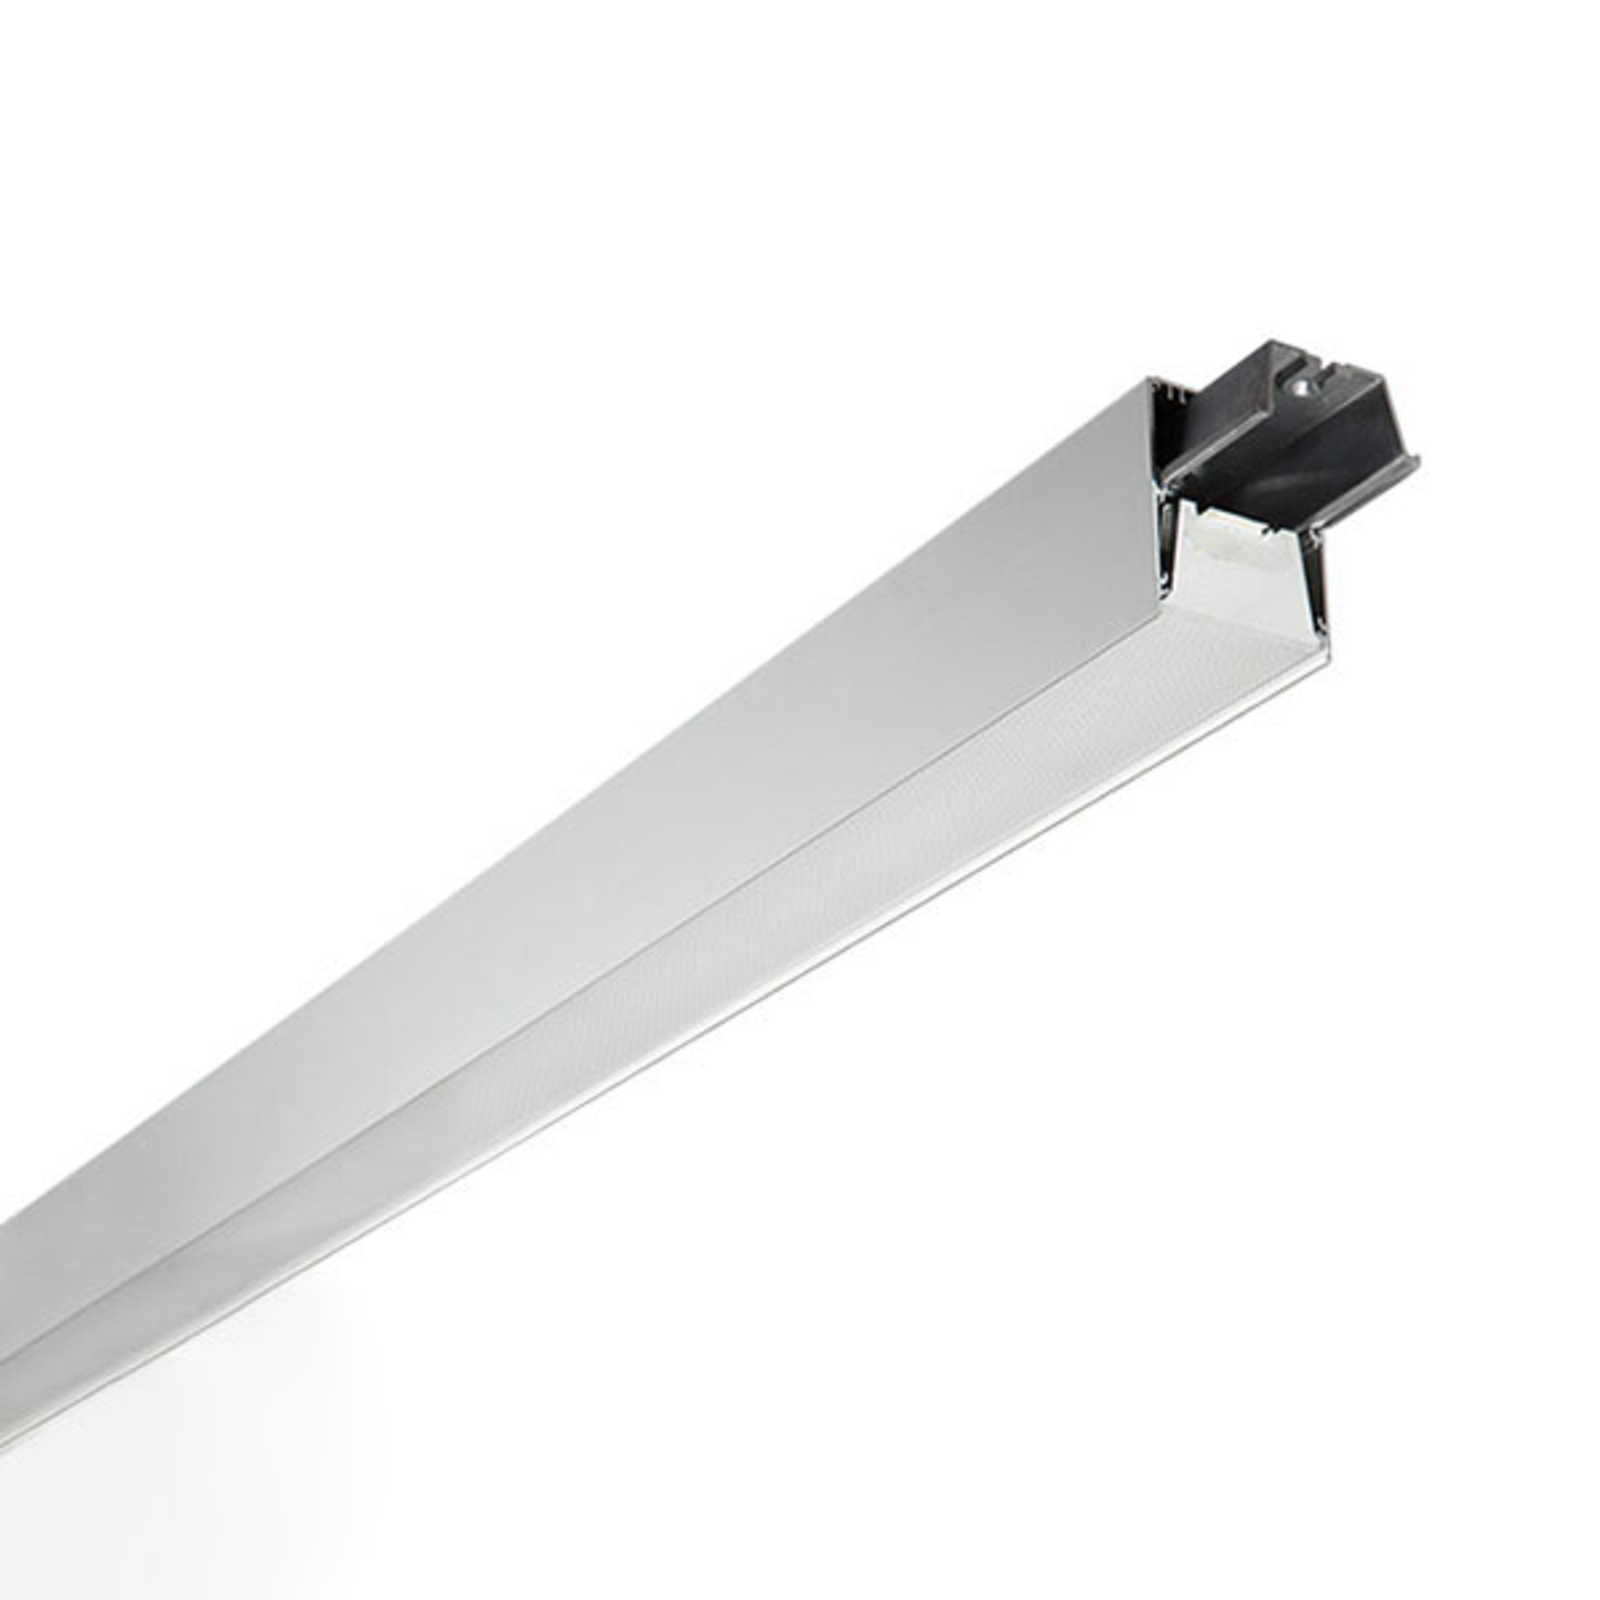 C80-SR LED ceiling light HF 830 2,520 lm 141 cm